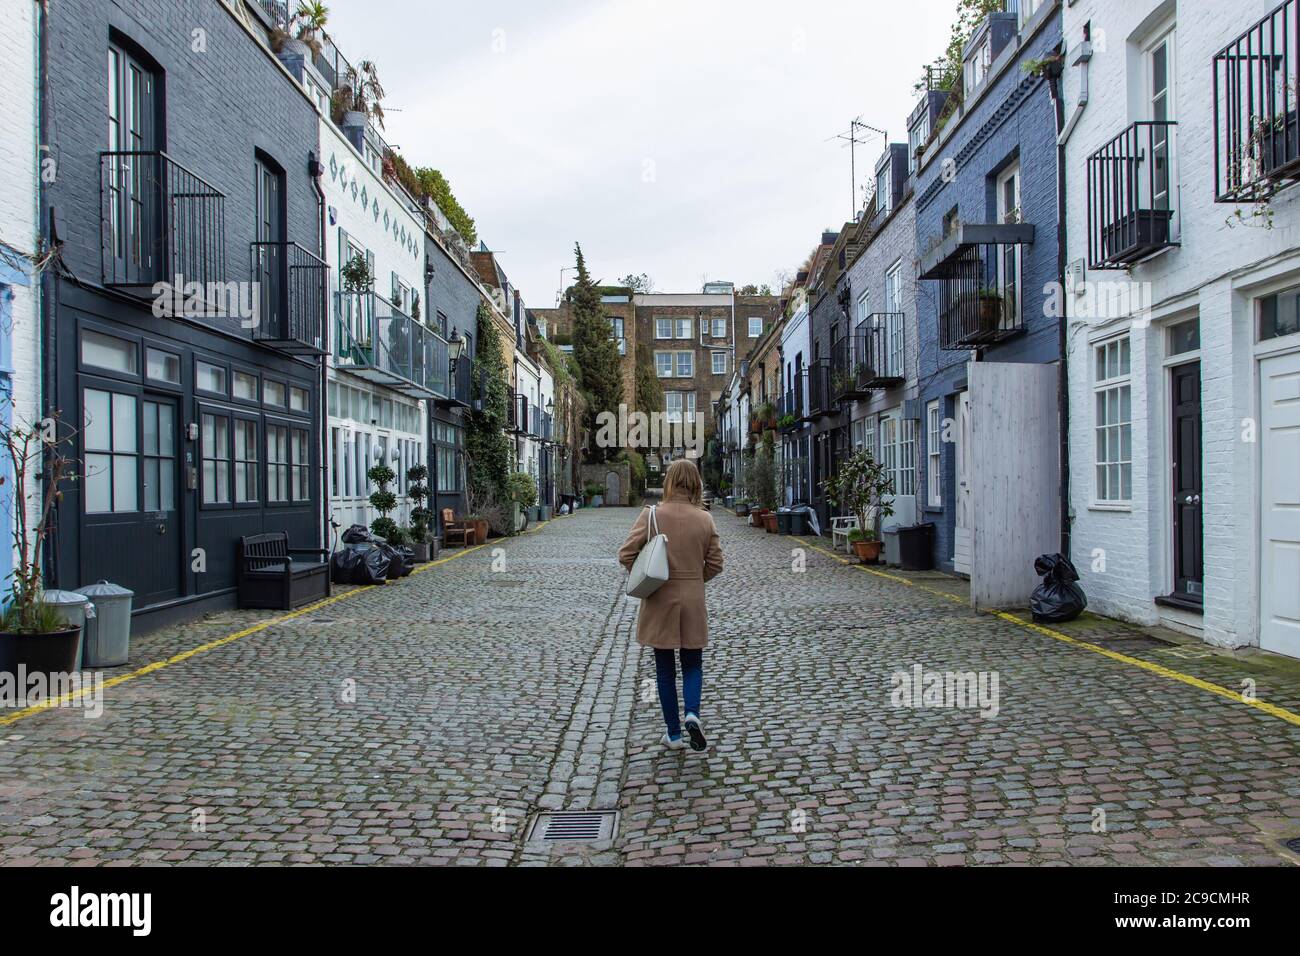 Ragazza che cammina in una strada residenziale a Londra, Regno Unito. Blocco di case londinesi. Architettura inglese. Eleganti edifici di appartamenti. Concetto immobiliare urb Foto Stock